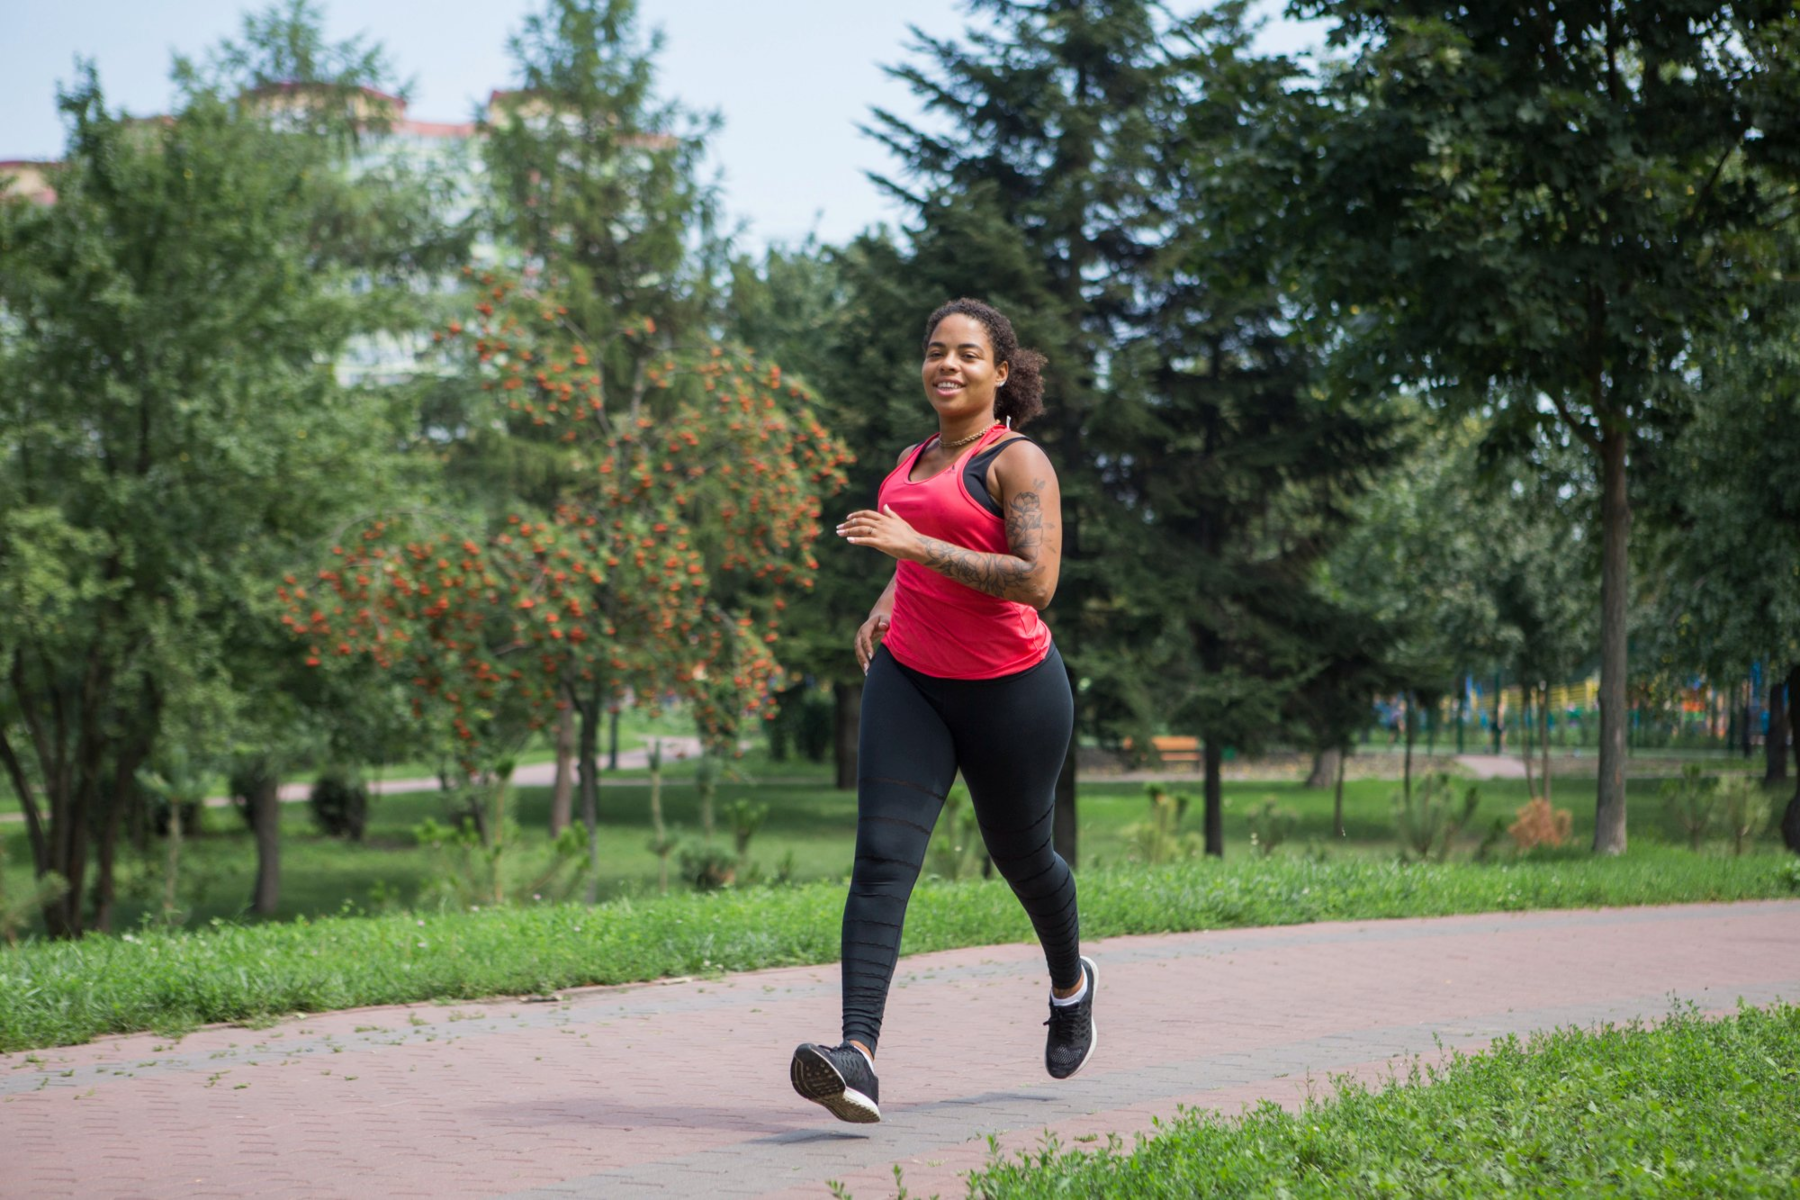 Τρέξιμο οφέλη: Λόγοι για τους οποίους πρέπει να τρέχουμε κάθε μέρα